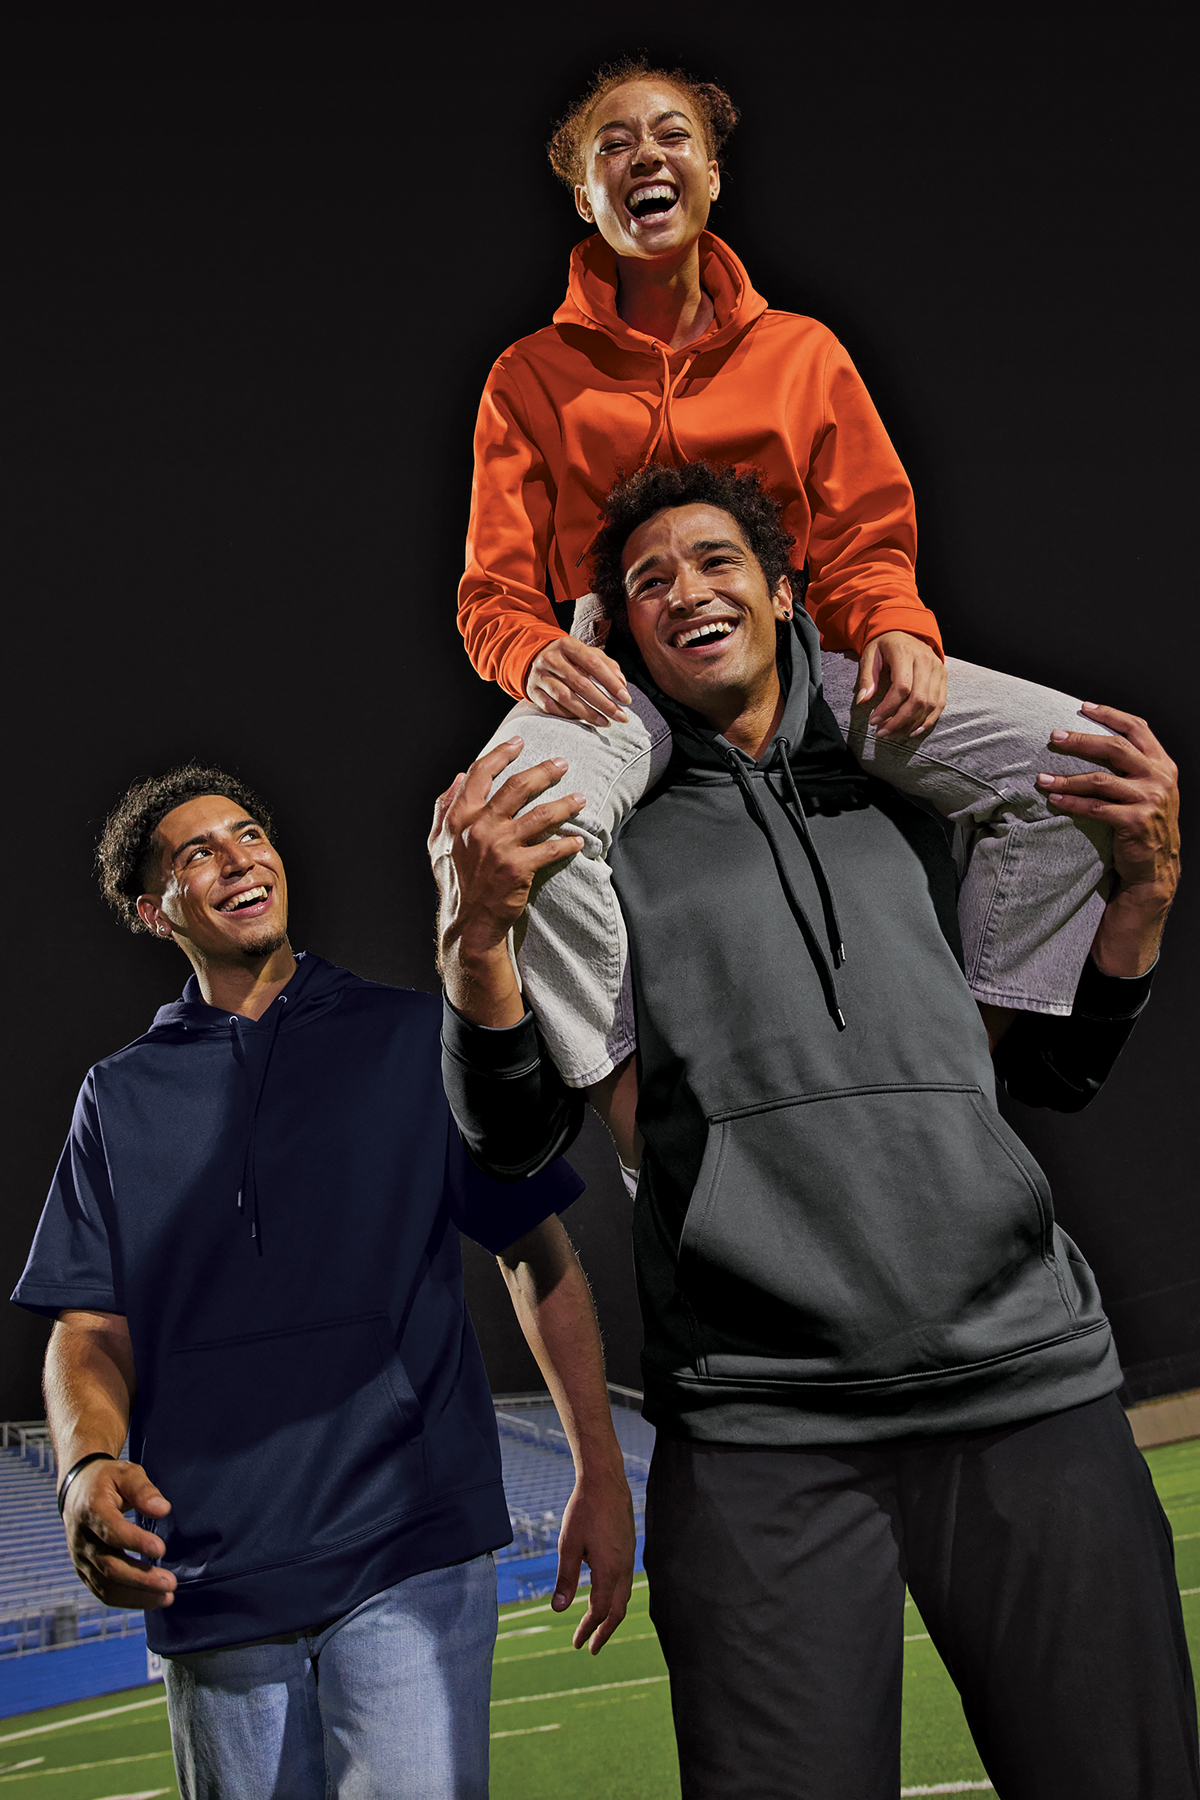 Sport-Tek Sport-Wick Fleece Hooded Pullover, Product